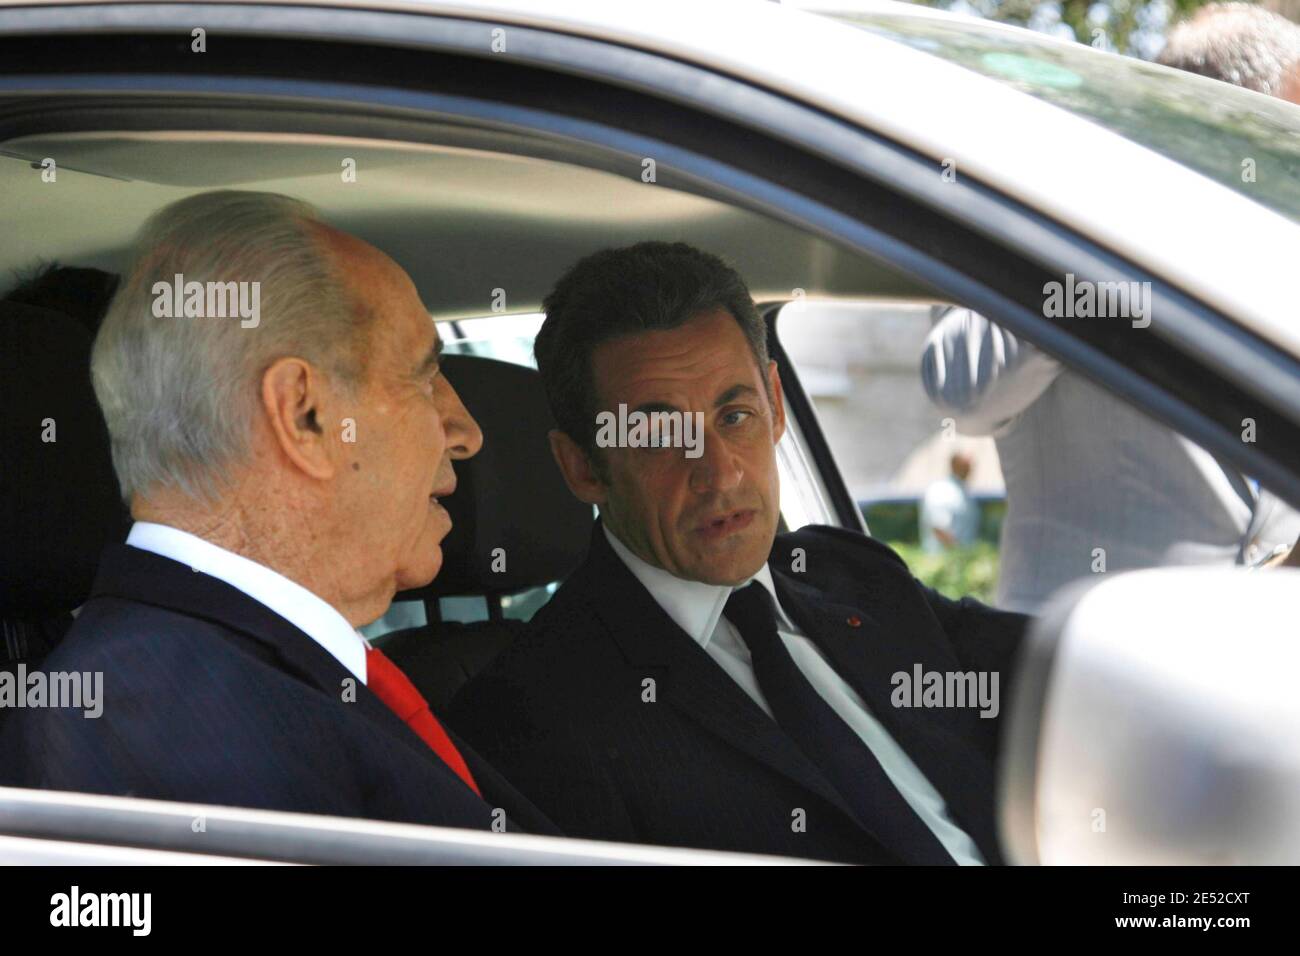 Le président français Nicolas Sarkozy (C) et son homologue israélien Shimon  Peres (L) s'assoient dans une voiture électrique Renault Megane lors de la  présentation du véhicule près de l'hôtel King David à